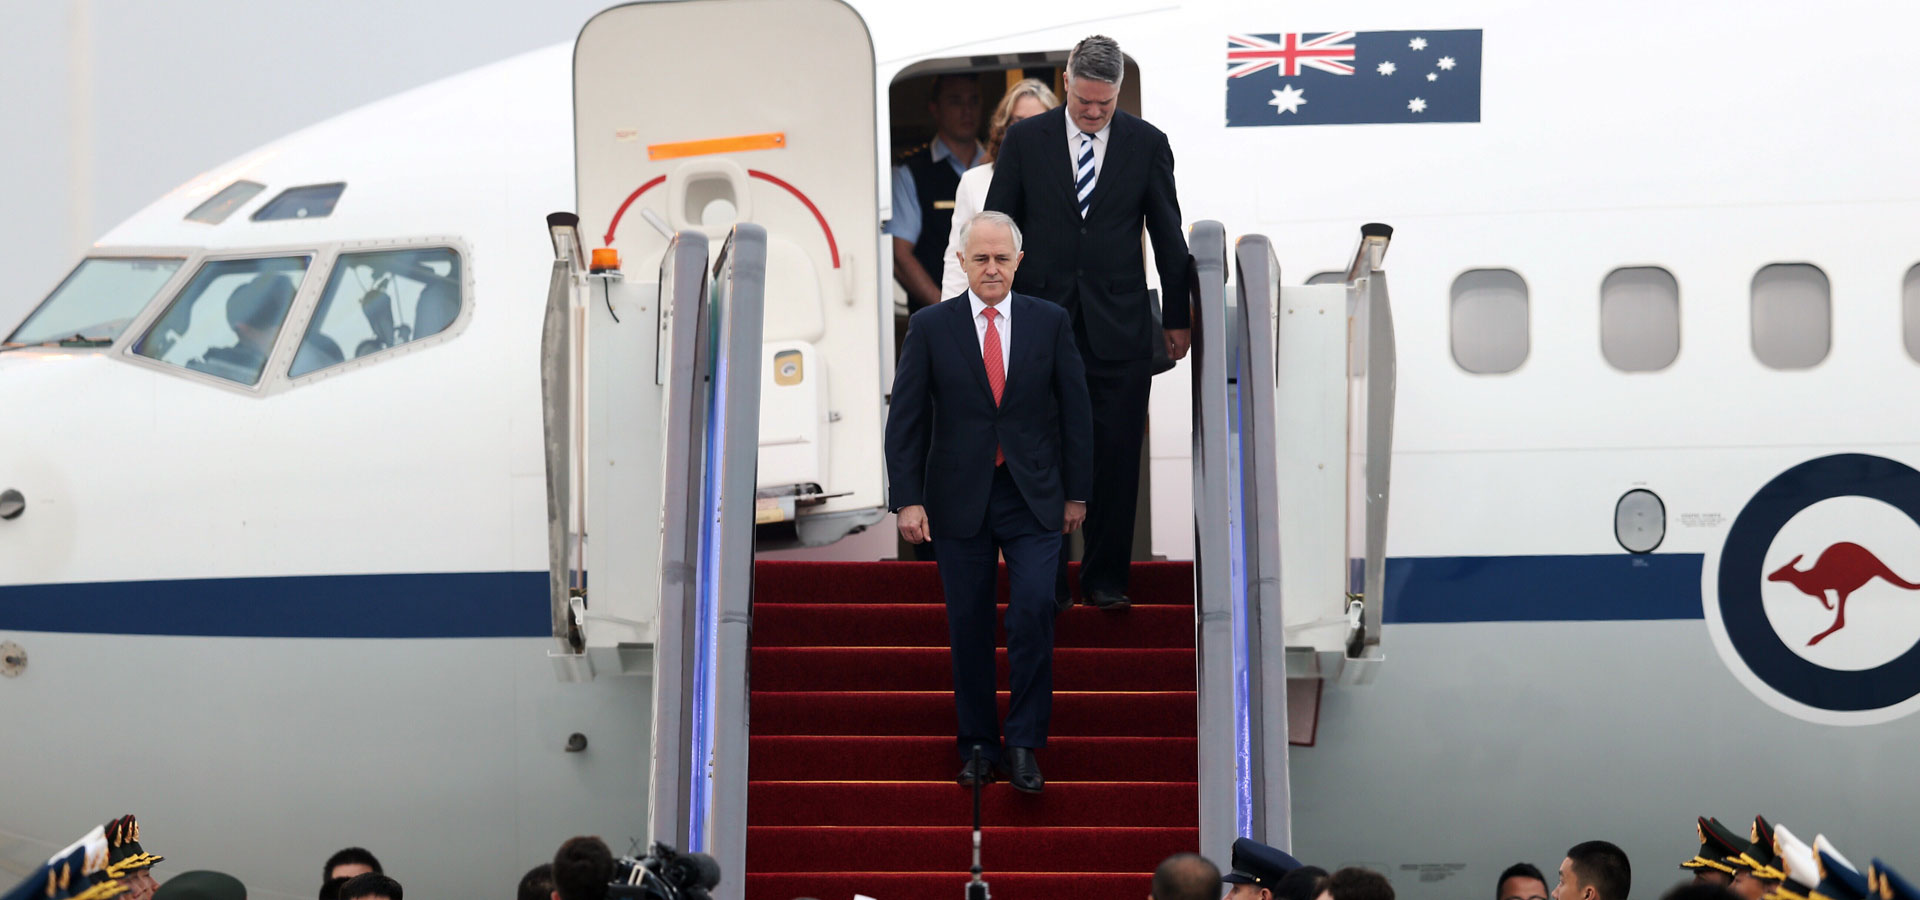 澳大利亚总理特恩布尔抵达杭州